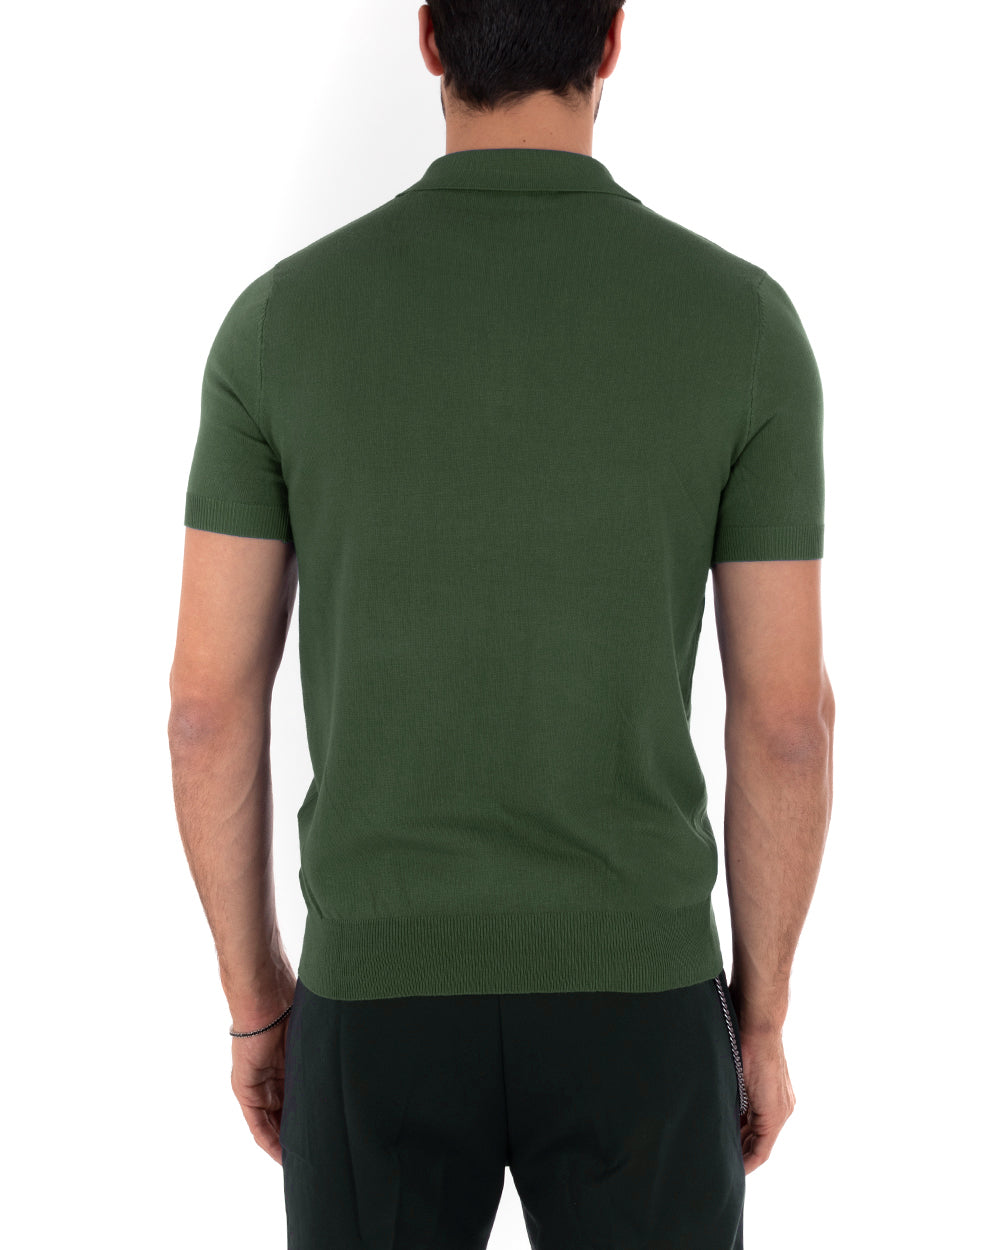 Polo Filo Uomo T-Shirt Manica Corta Con Colletto Bottoni Tinta Unita Verde Casual GIOSAL-TS2777A